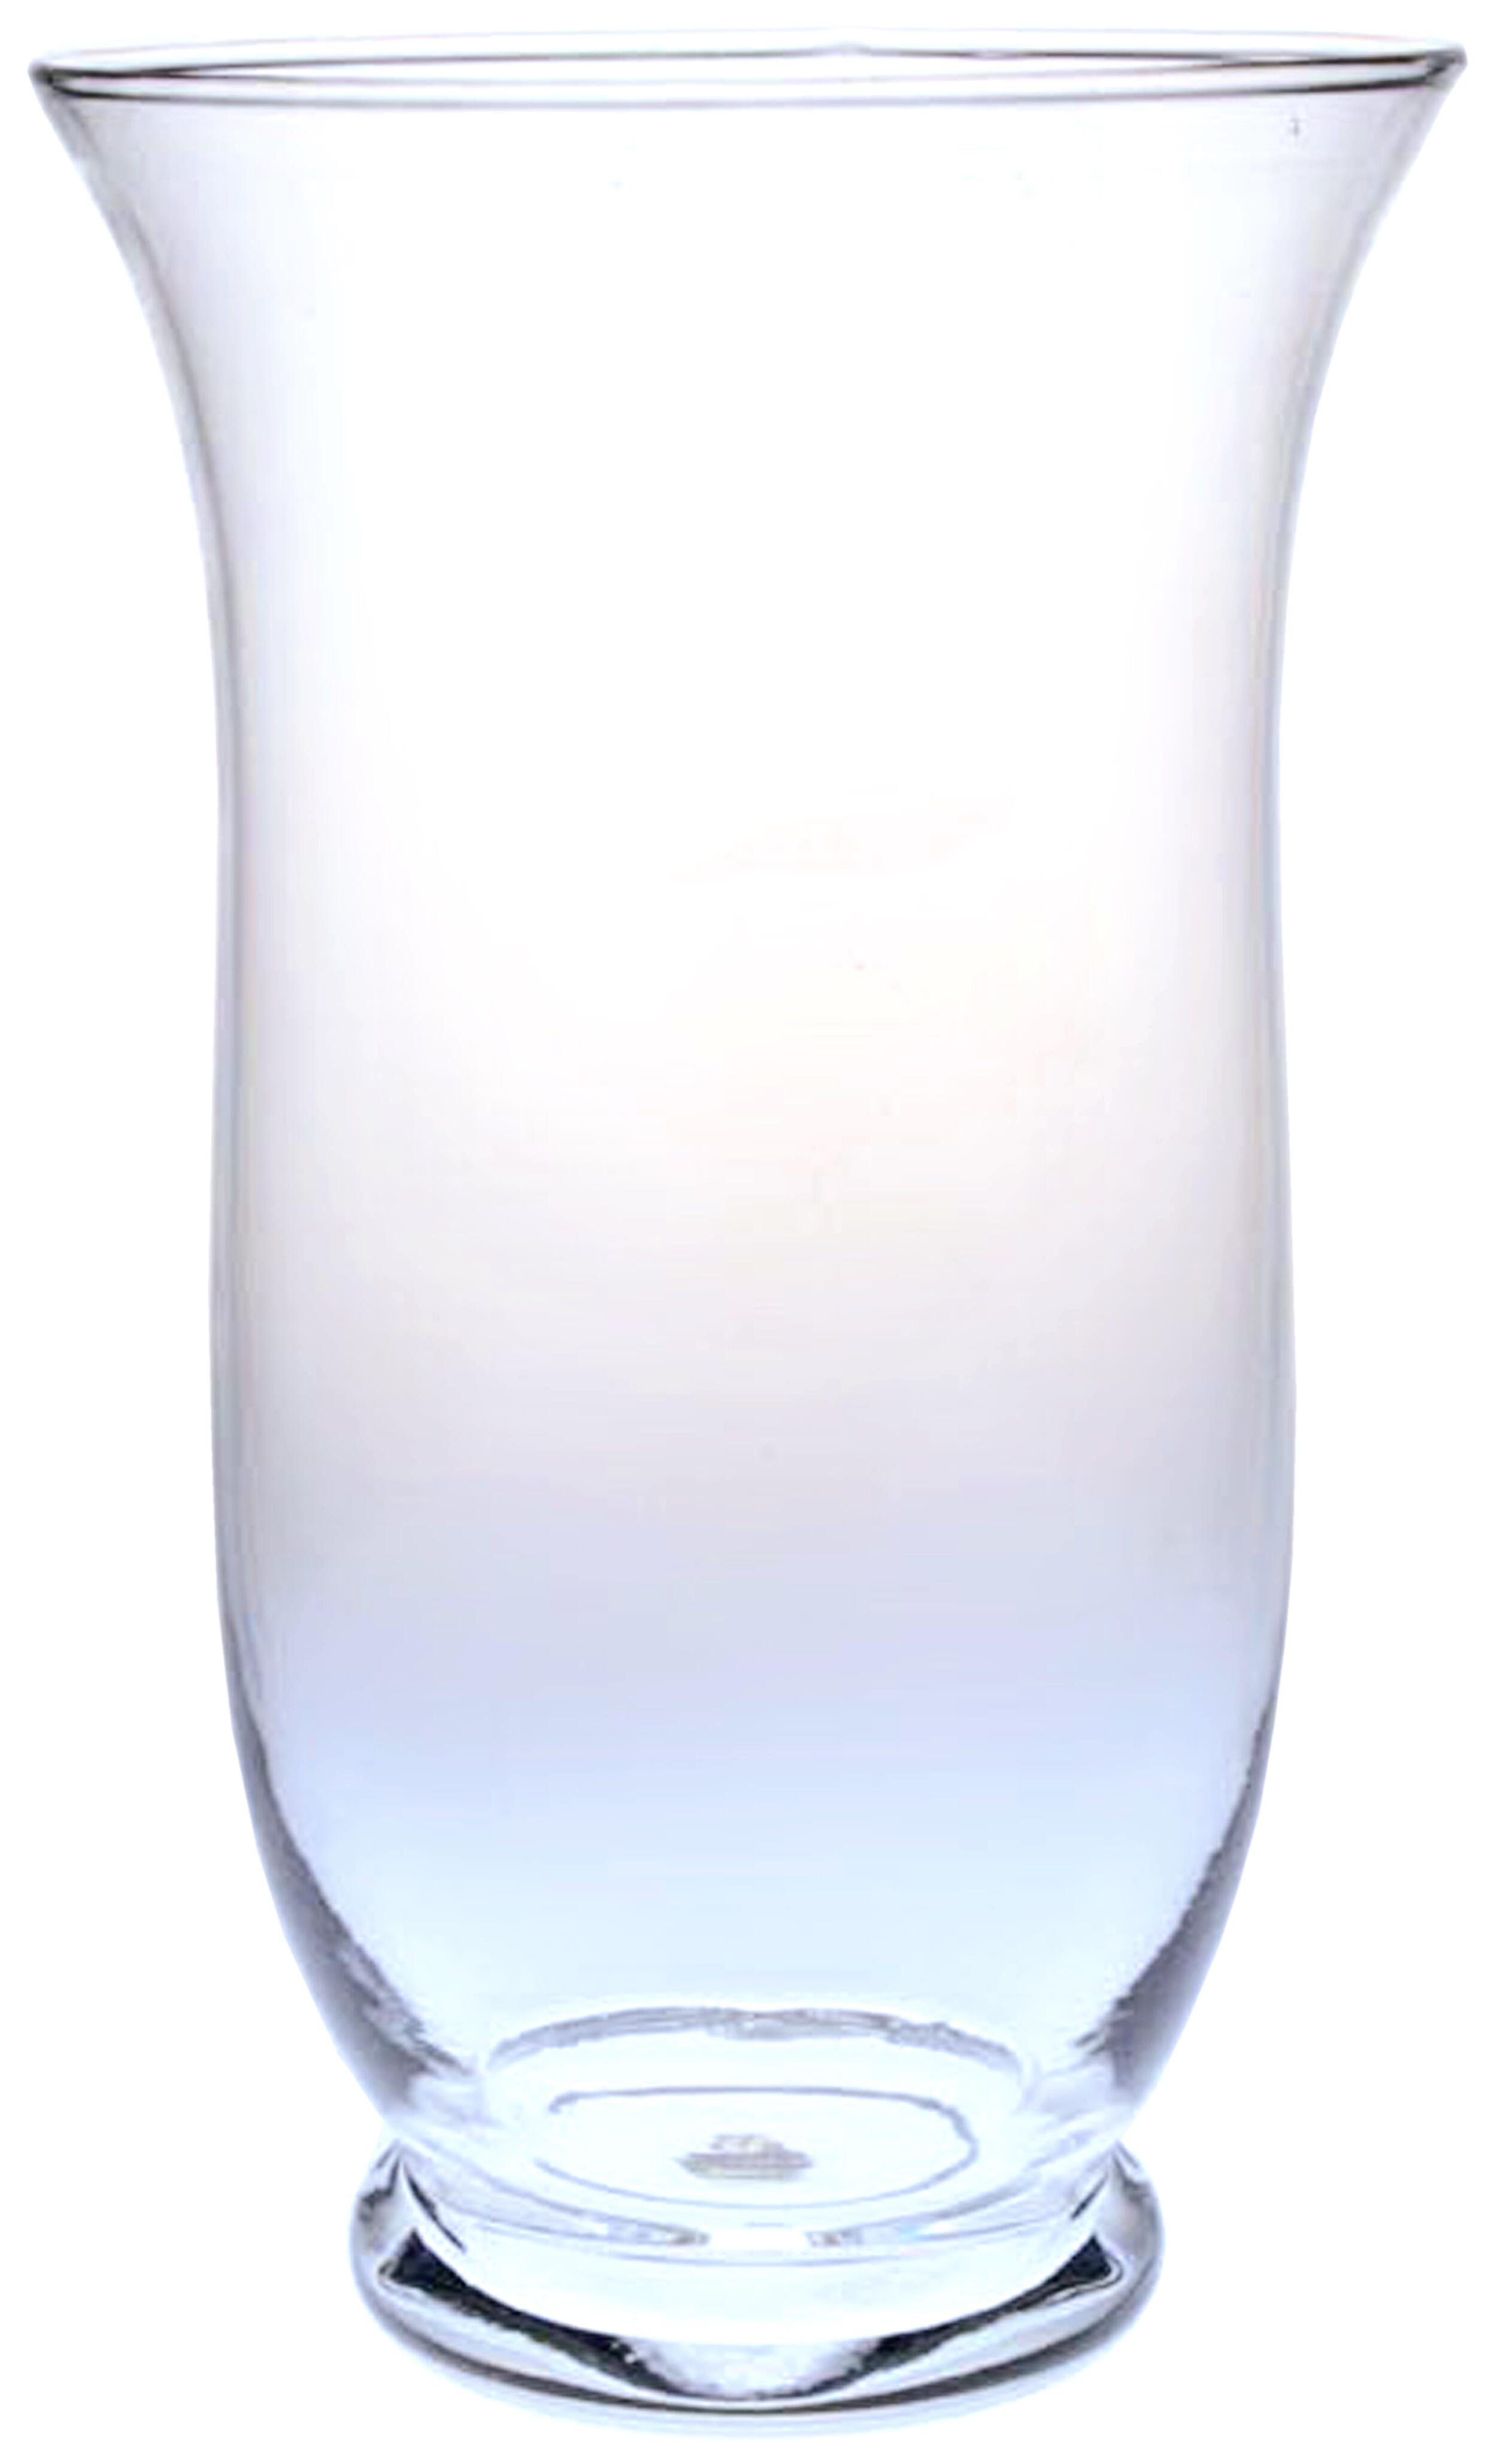 Jarrón redondo de cristal 12.5x20.5 cm